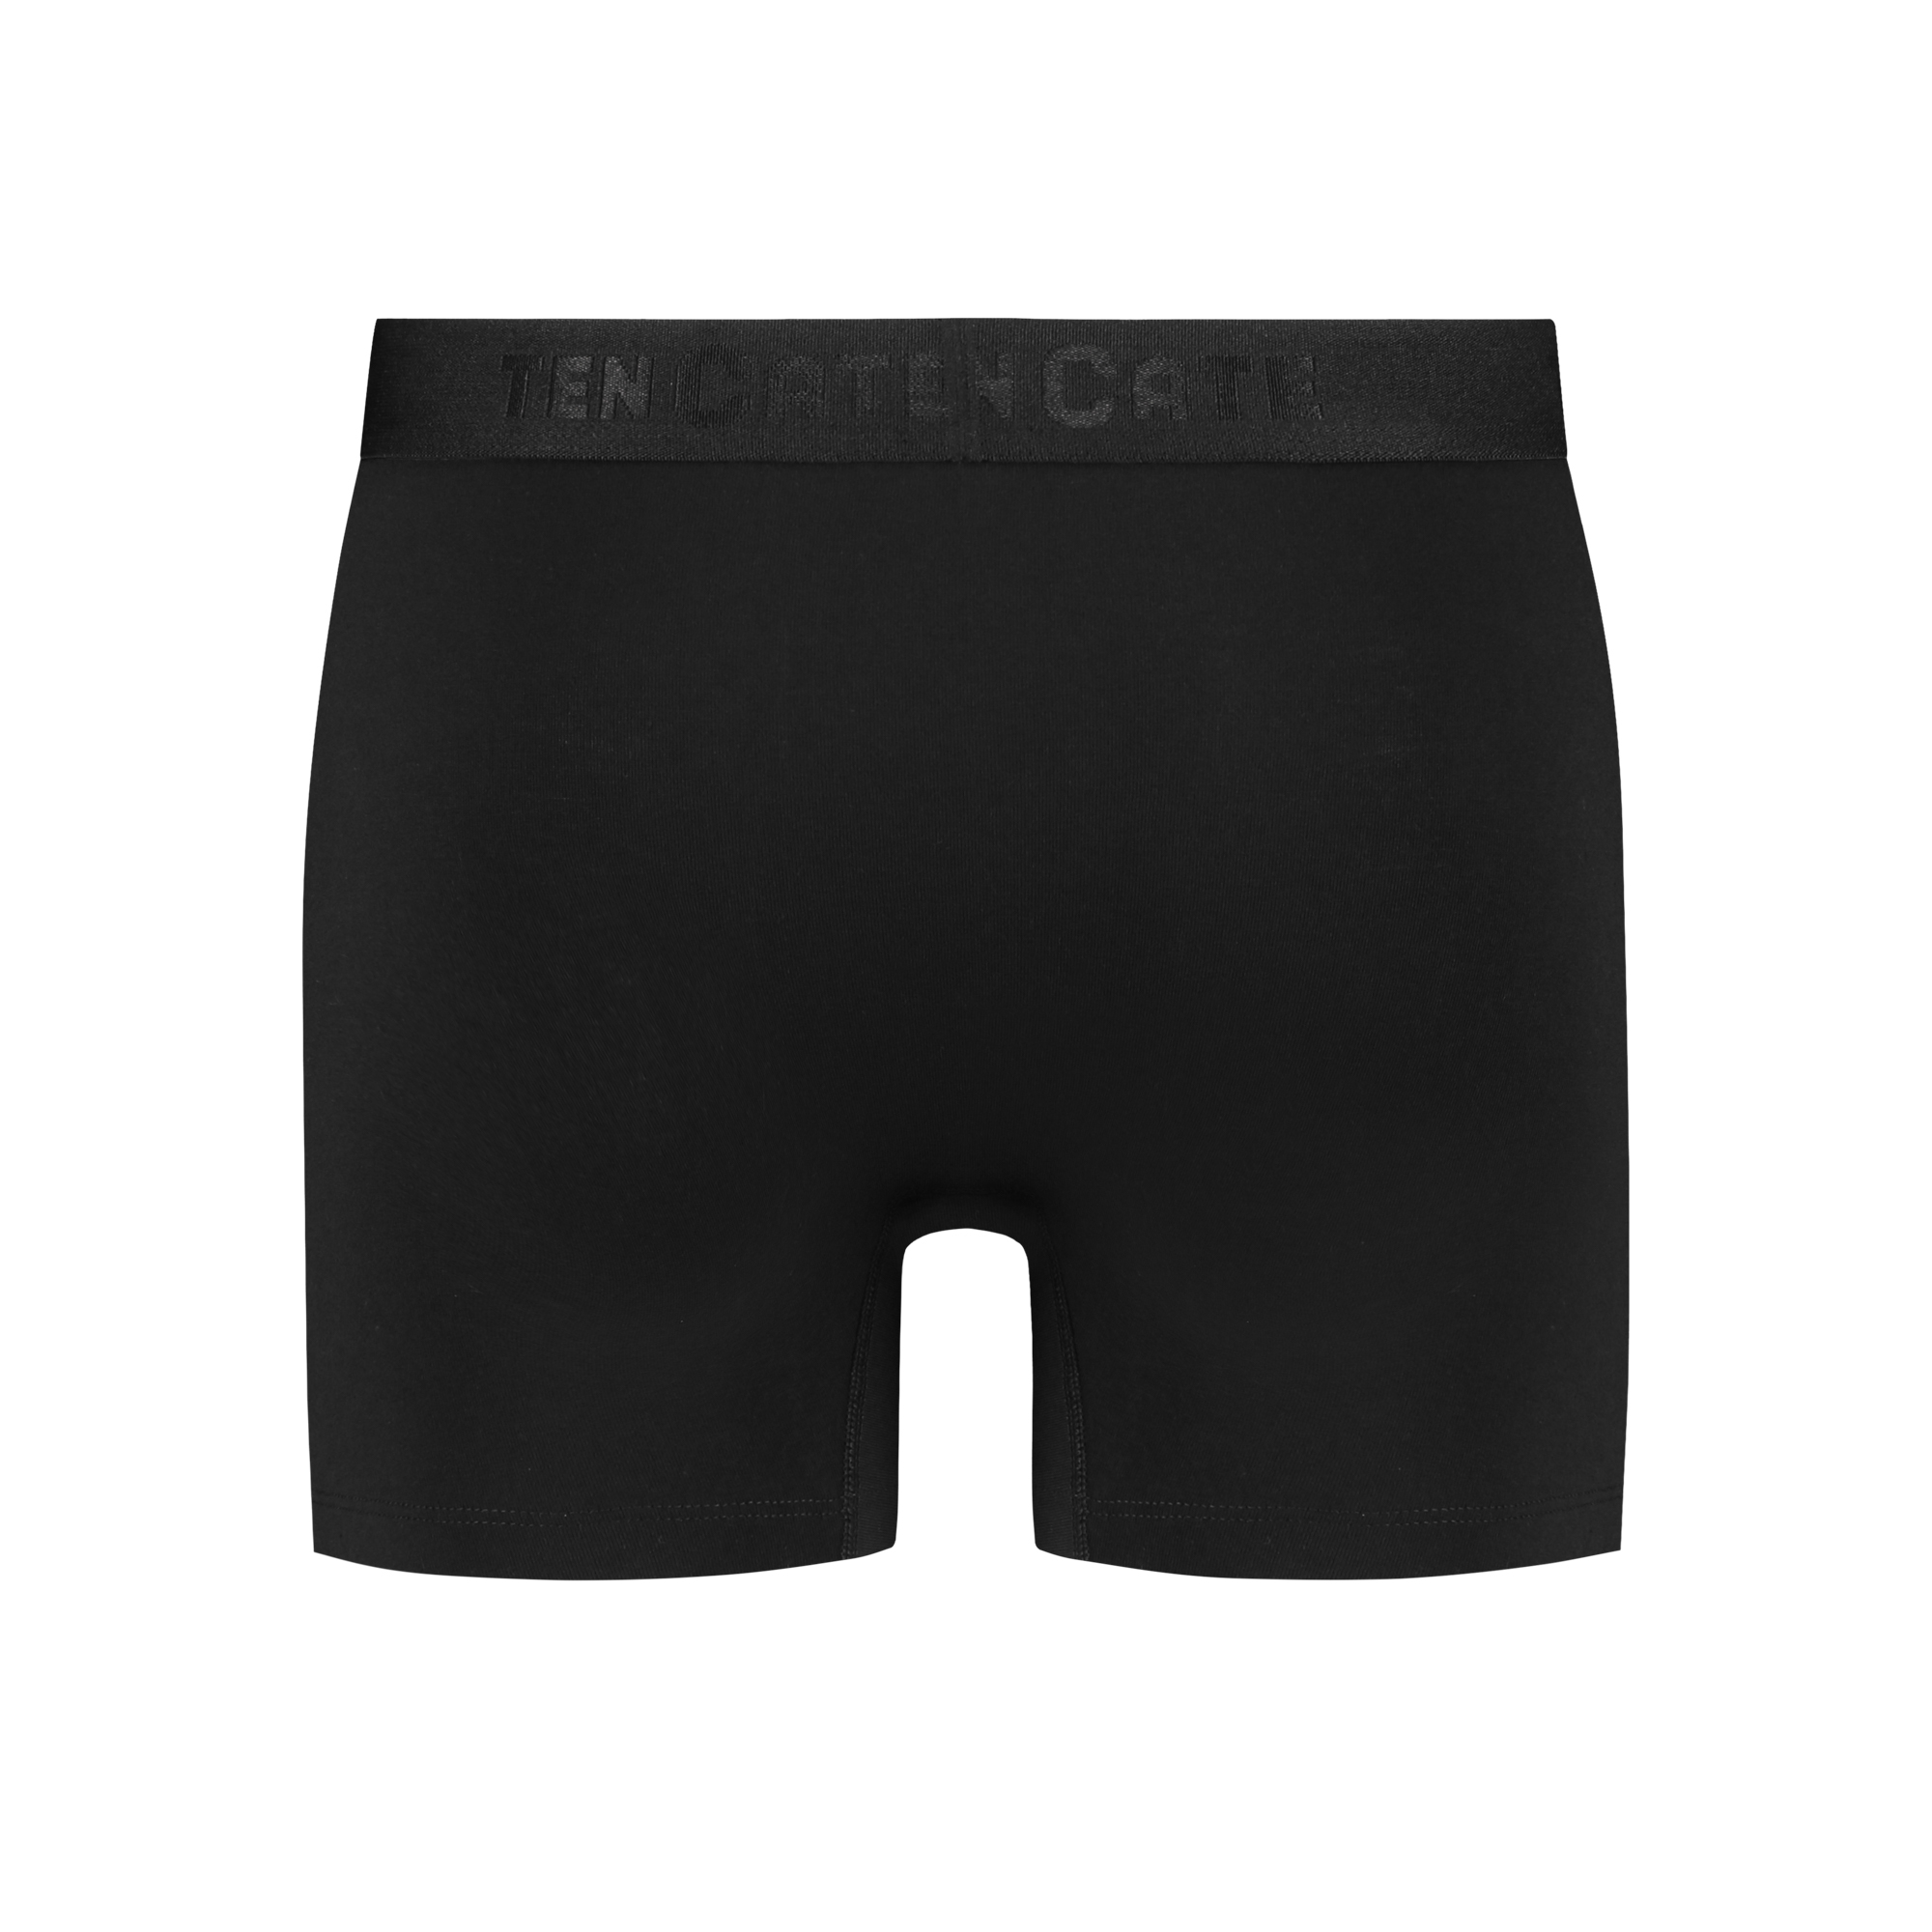 shorts zwart 4 pack